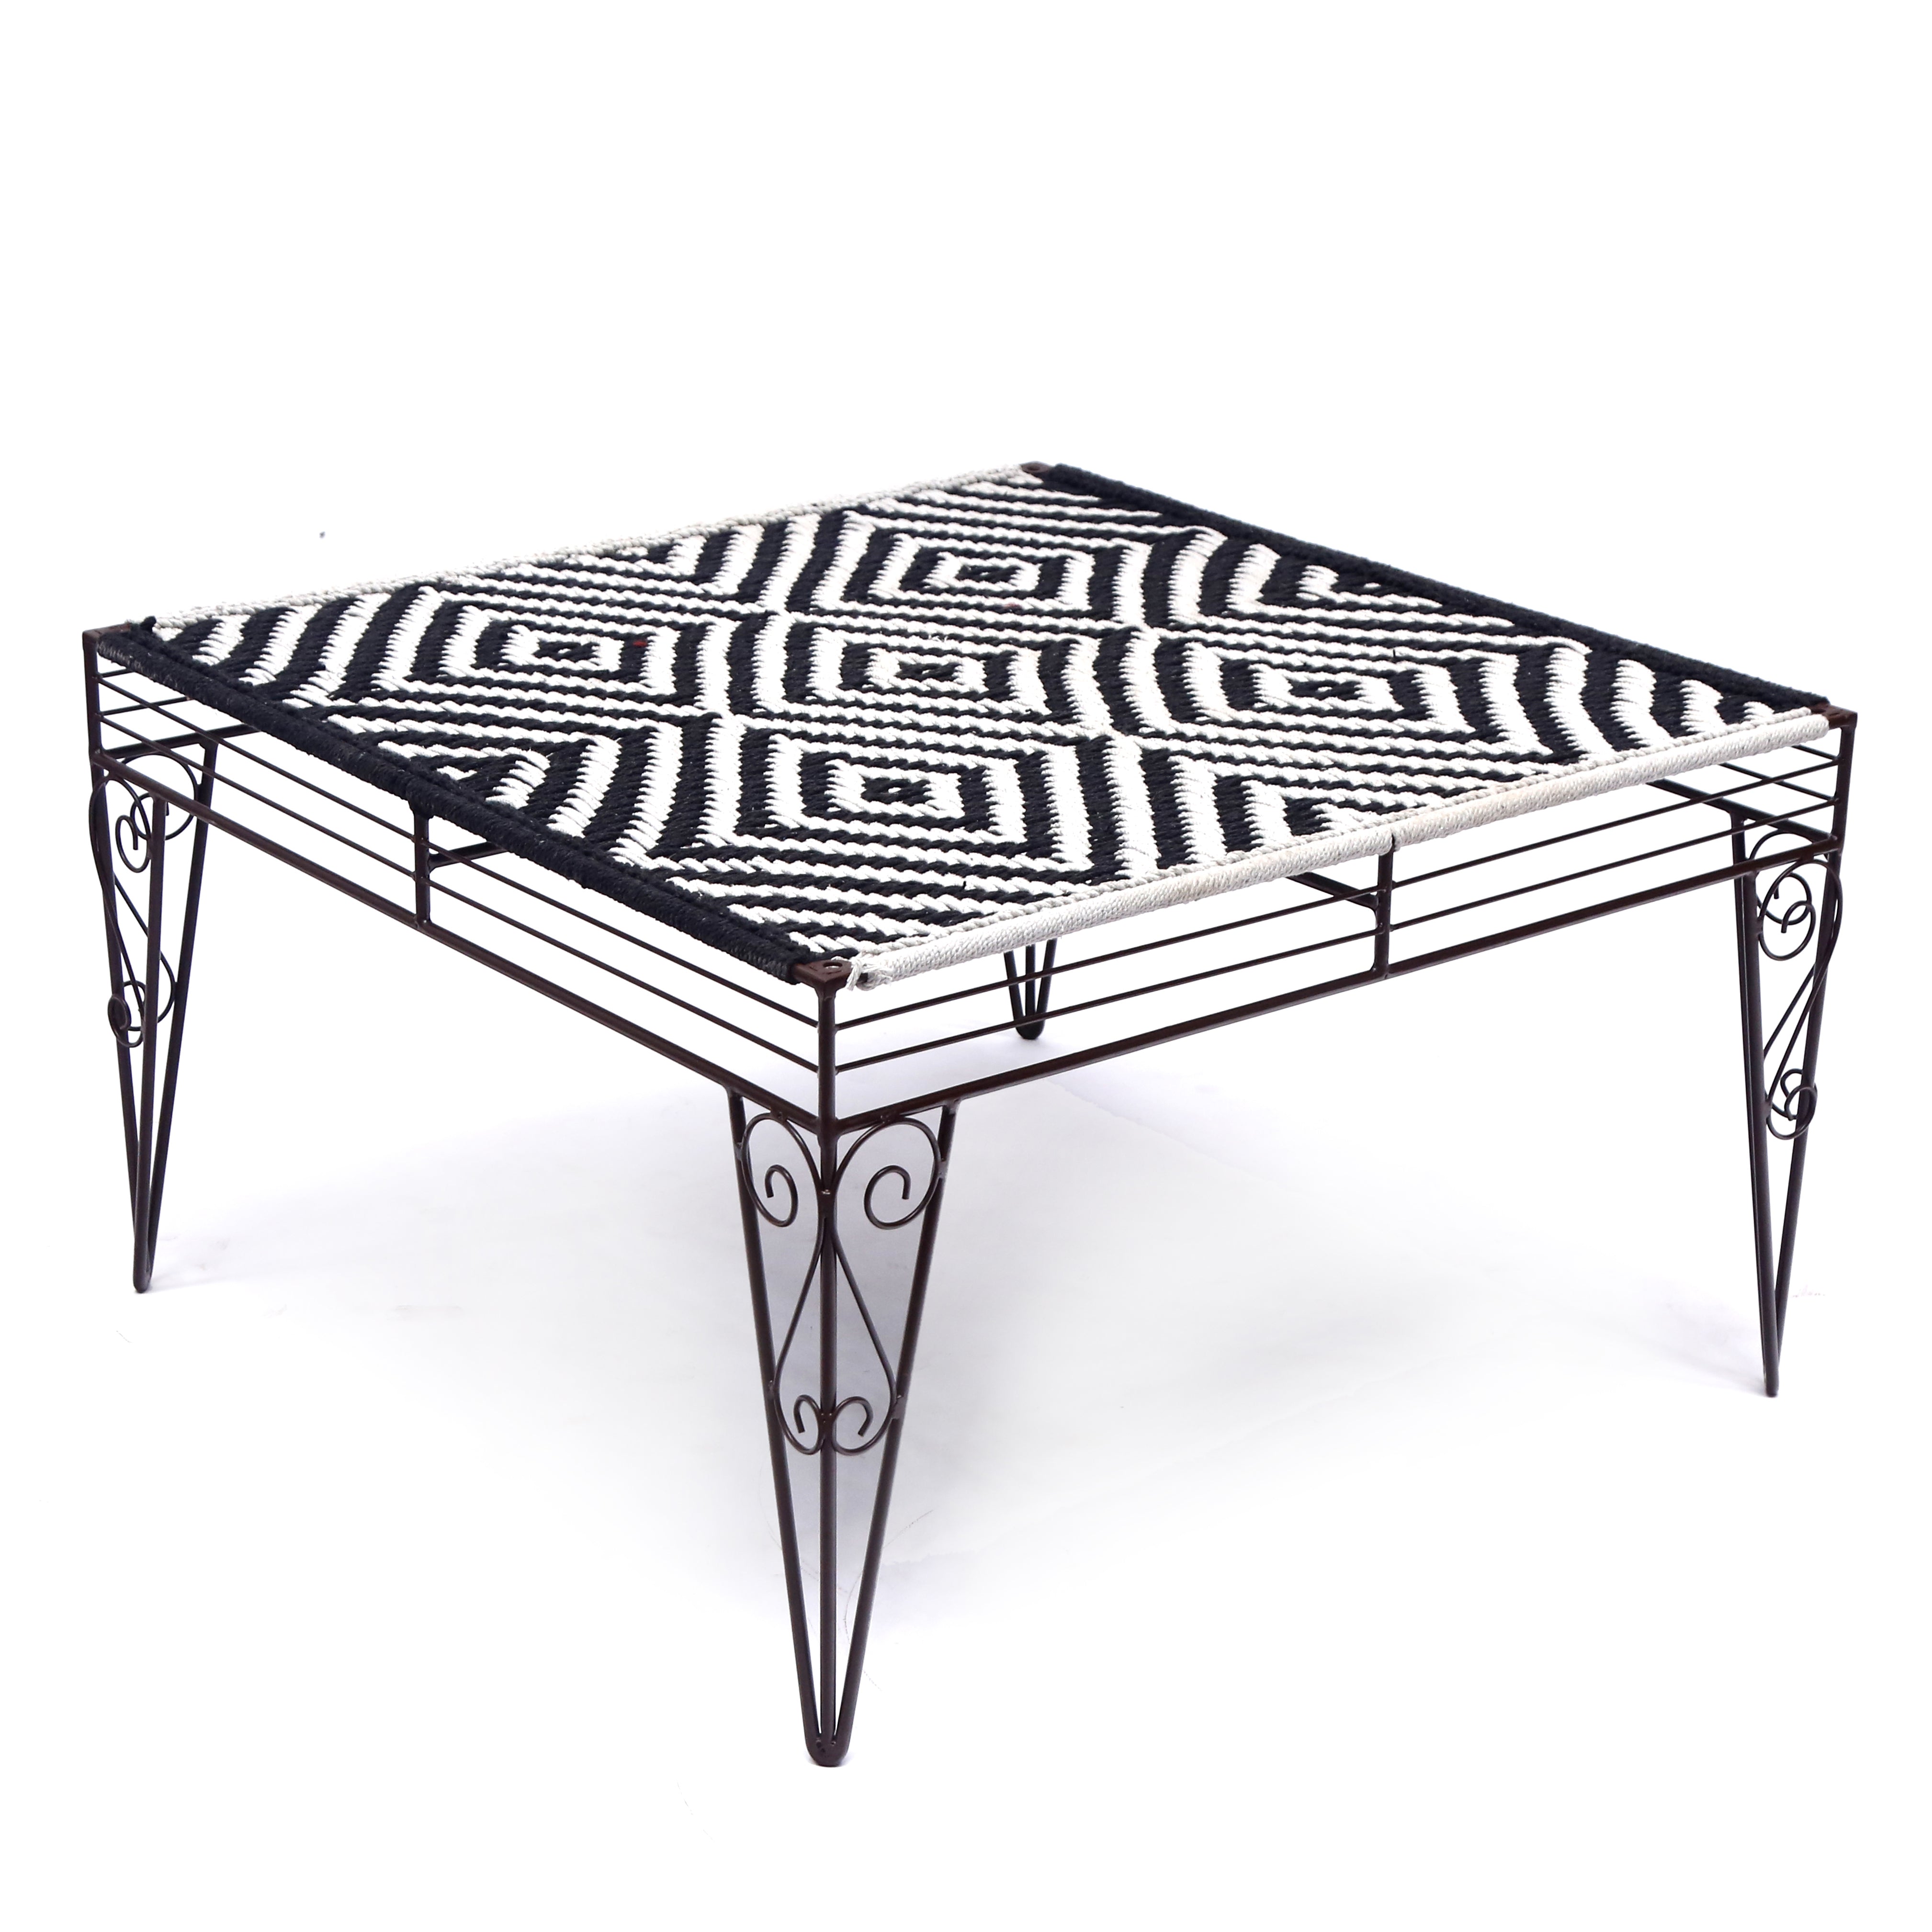 Woven Metallic Coffee Table Coffee Table